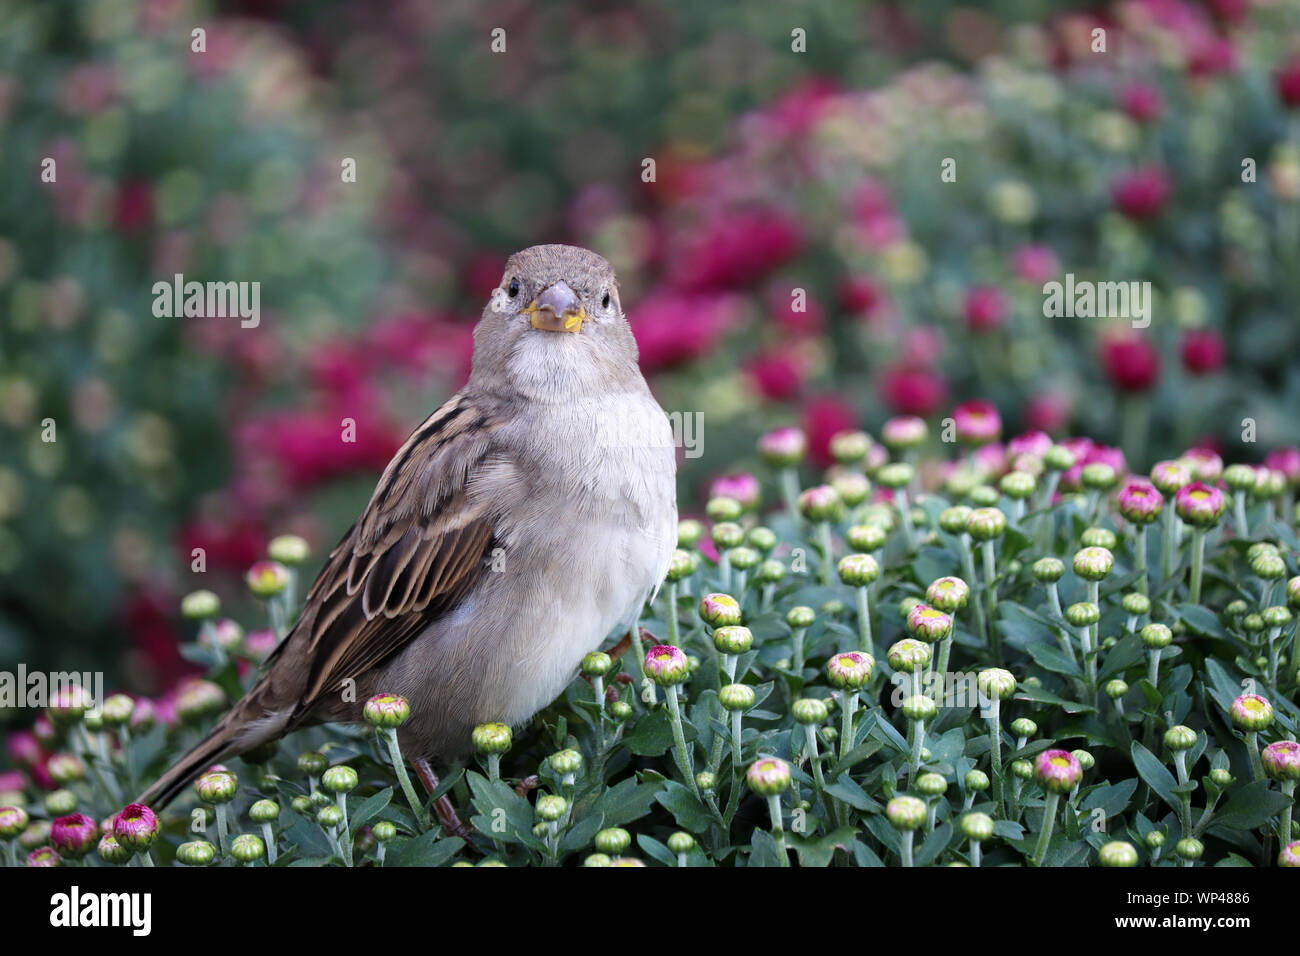 Sparrow assis sur un champ de fleurs roses et rouges chrysanthèmes, paysage pittoresque dans des tons doux. Floral background, modèle magnifique Banque D'Images